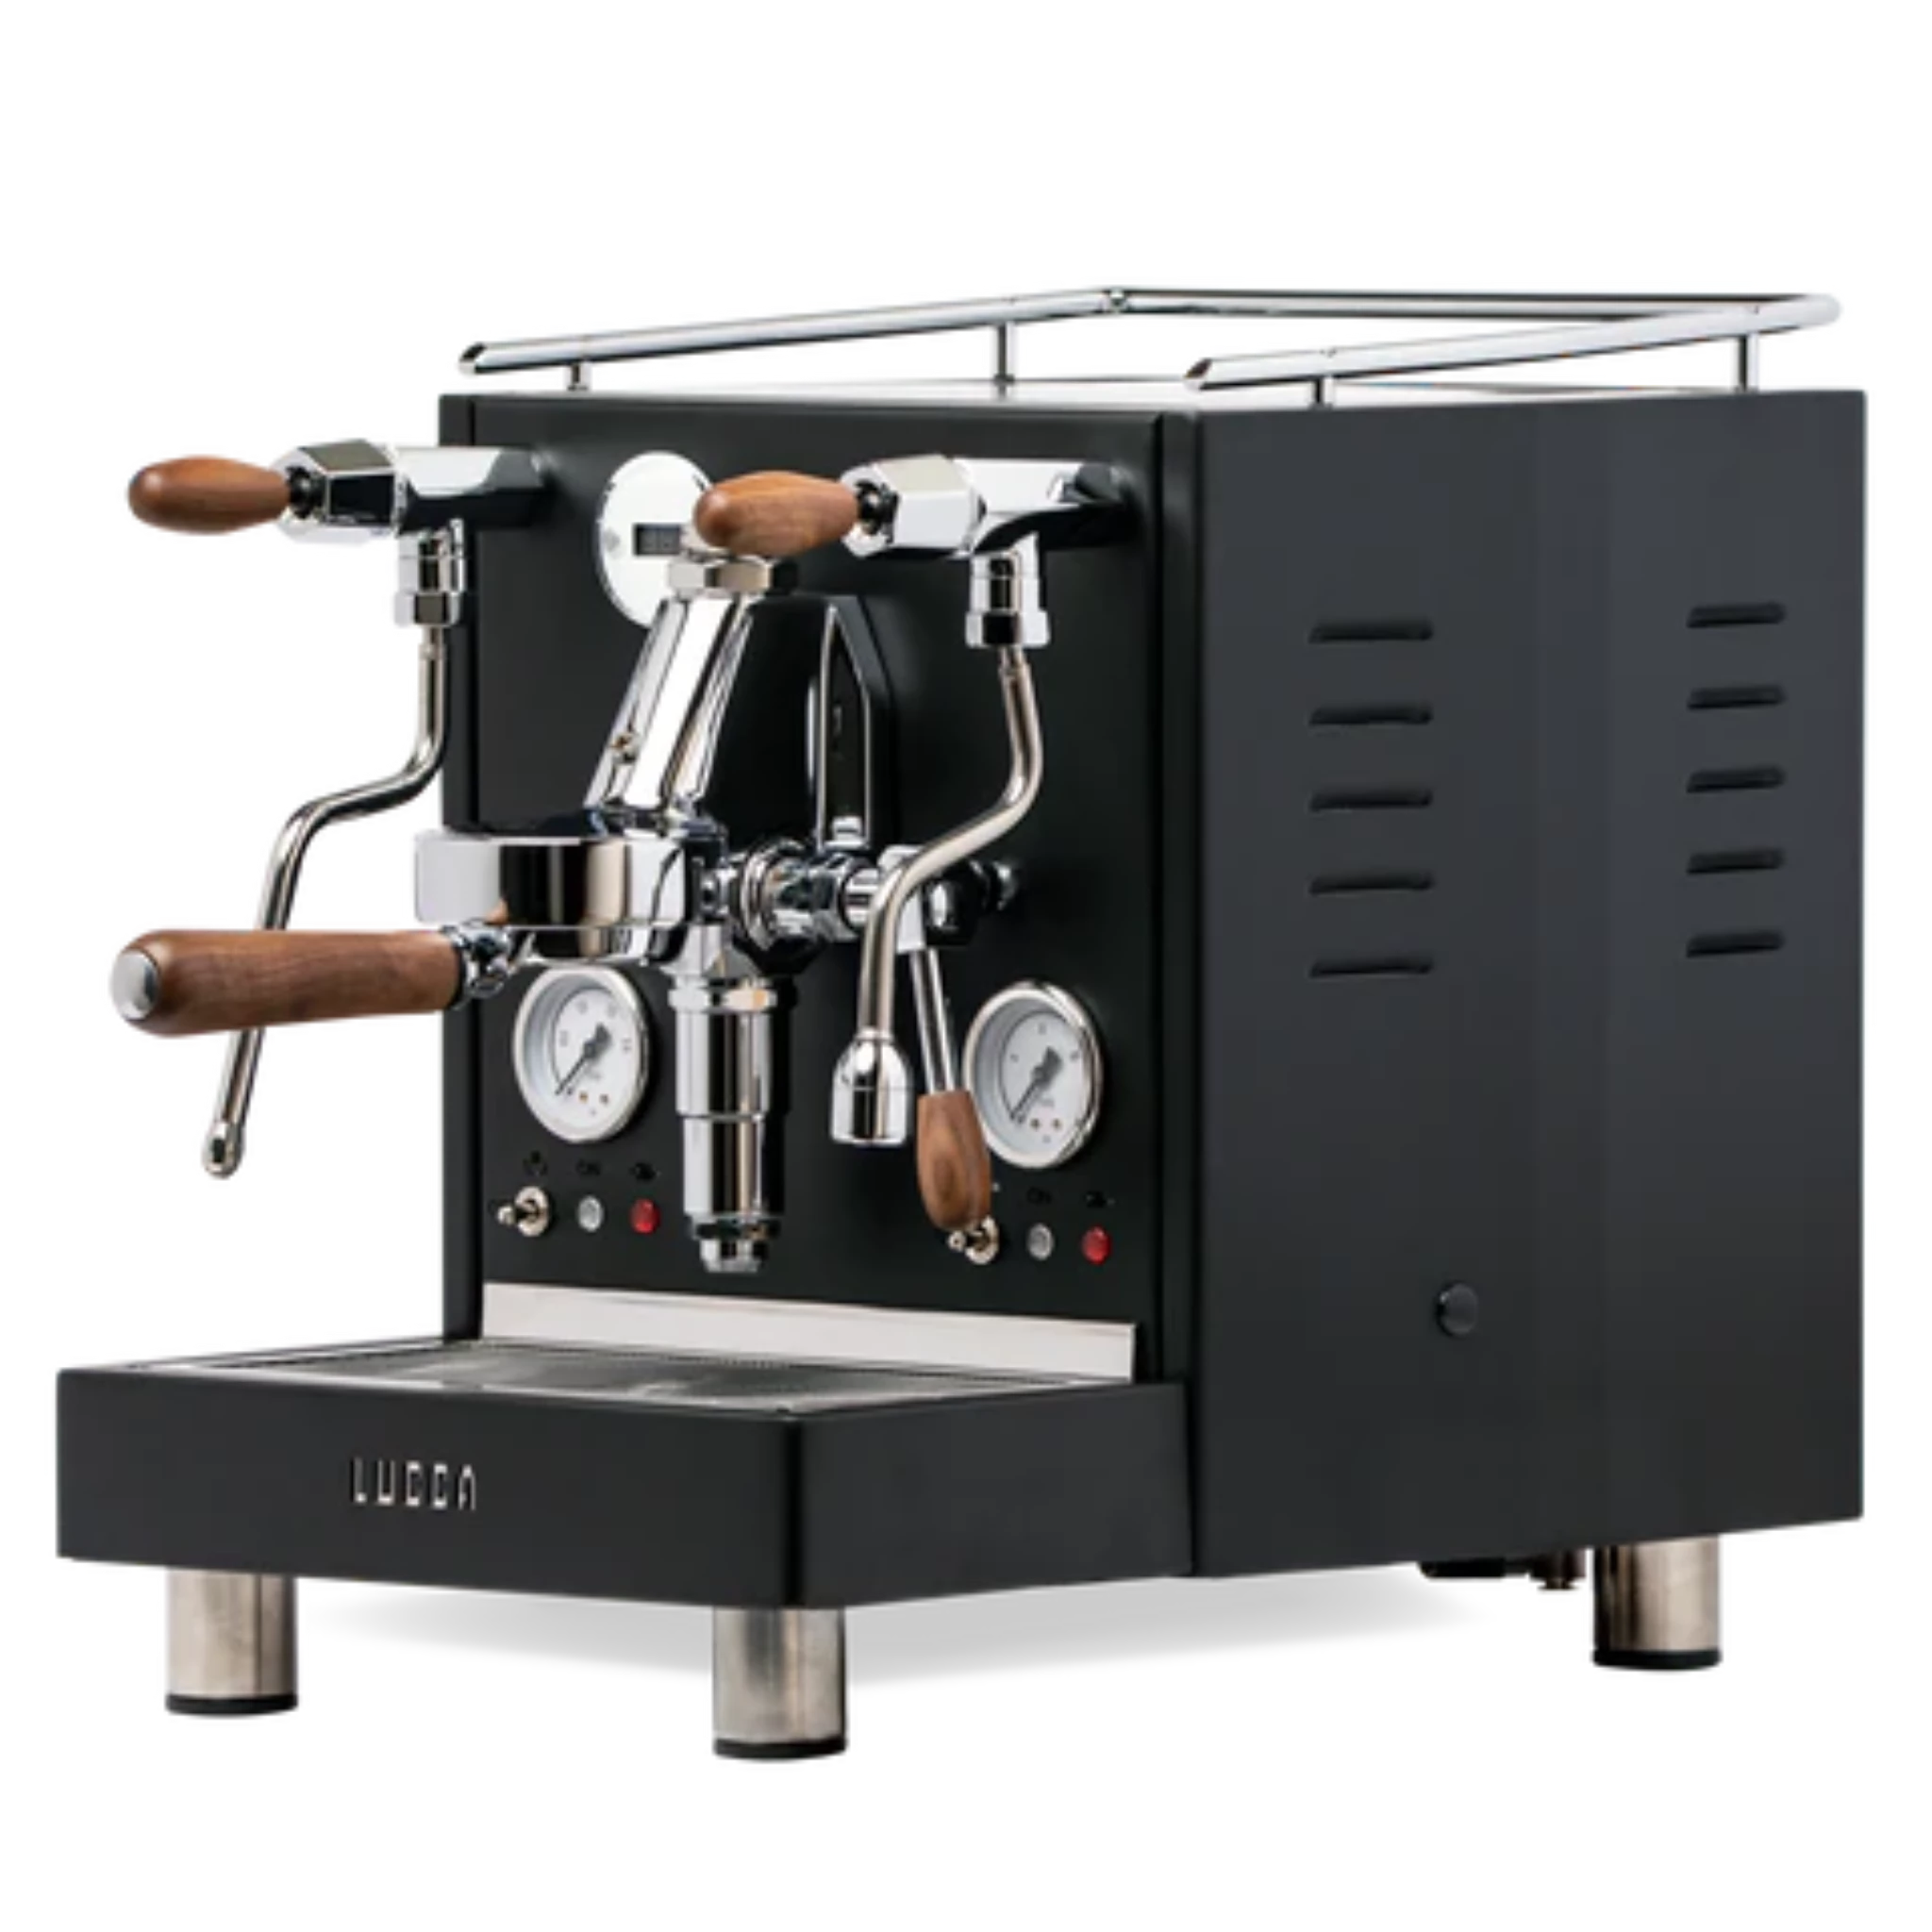 LUCCA M58 Home Espresso Machine